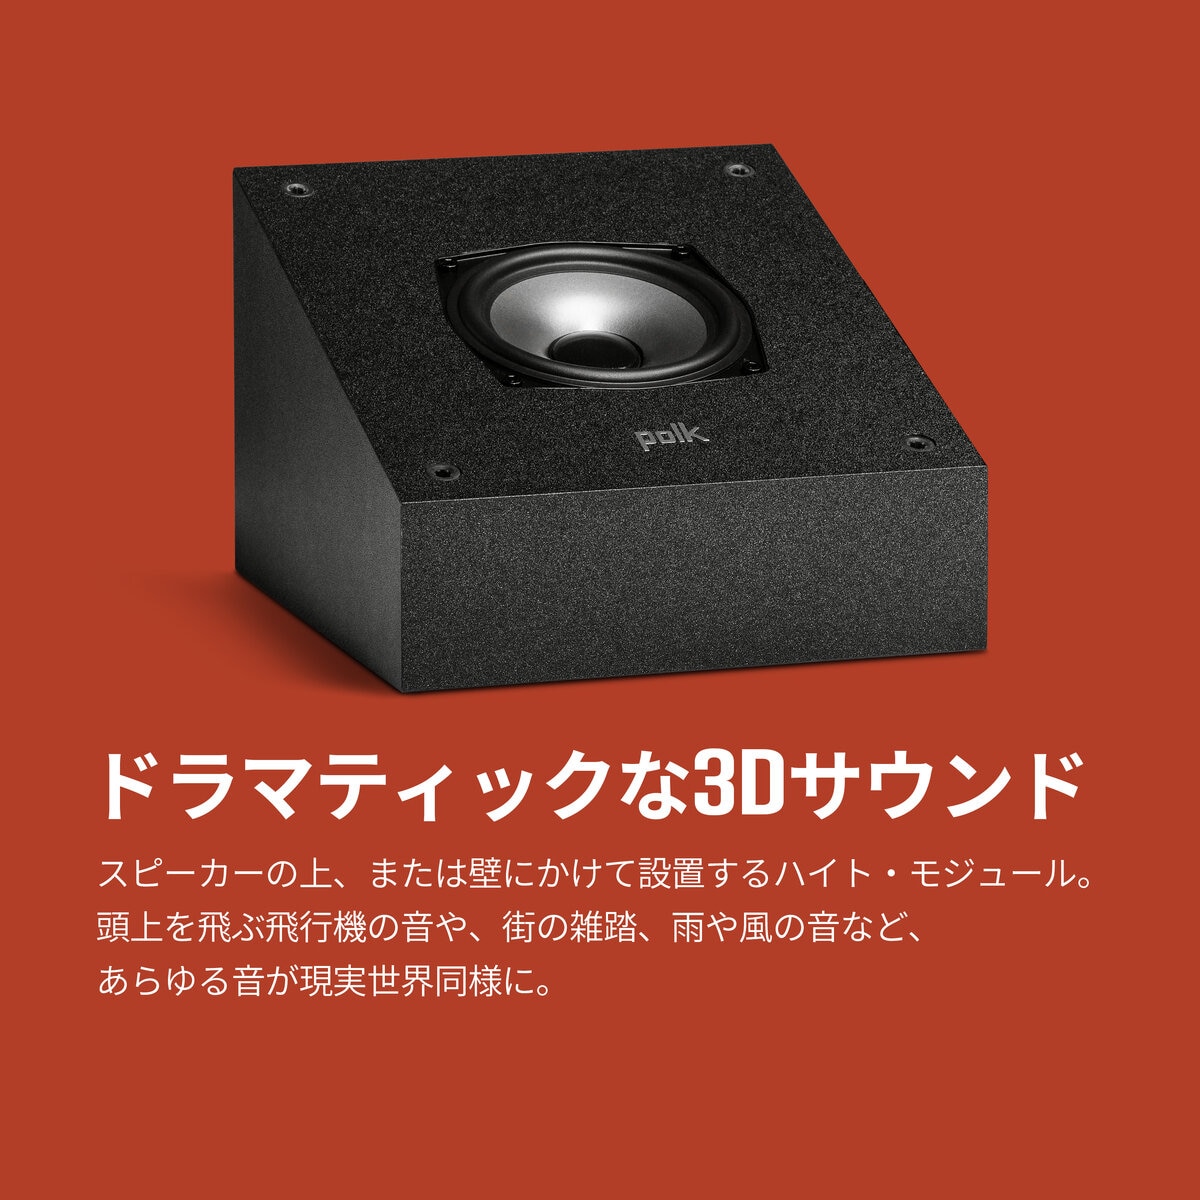 ポーク ハイレゾ ハイトモジュール スピーカー MXT90 | Costco Japan